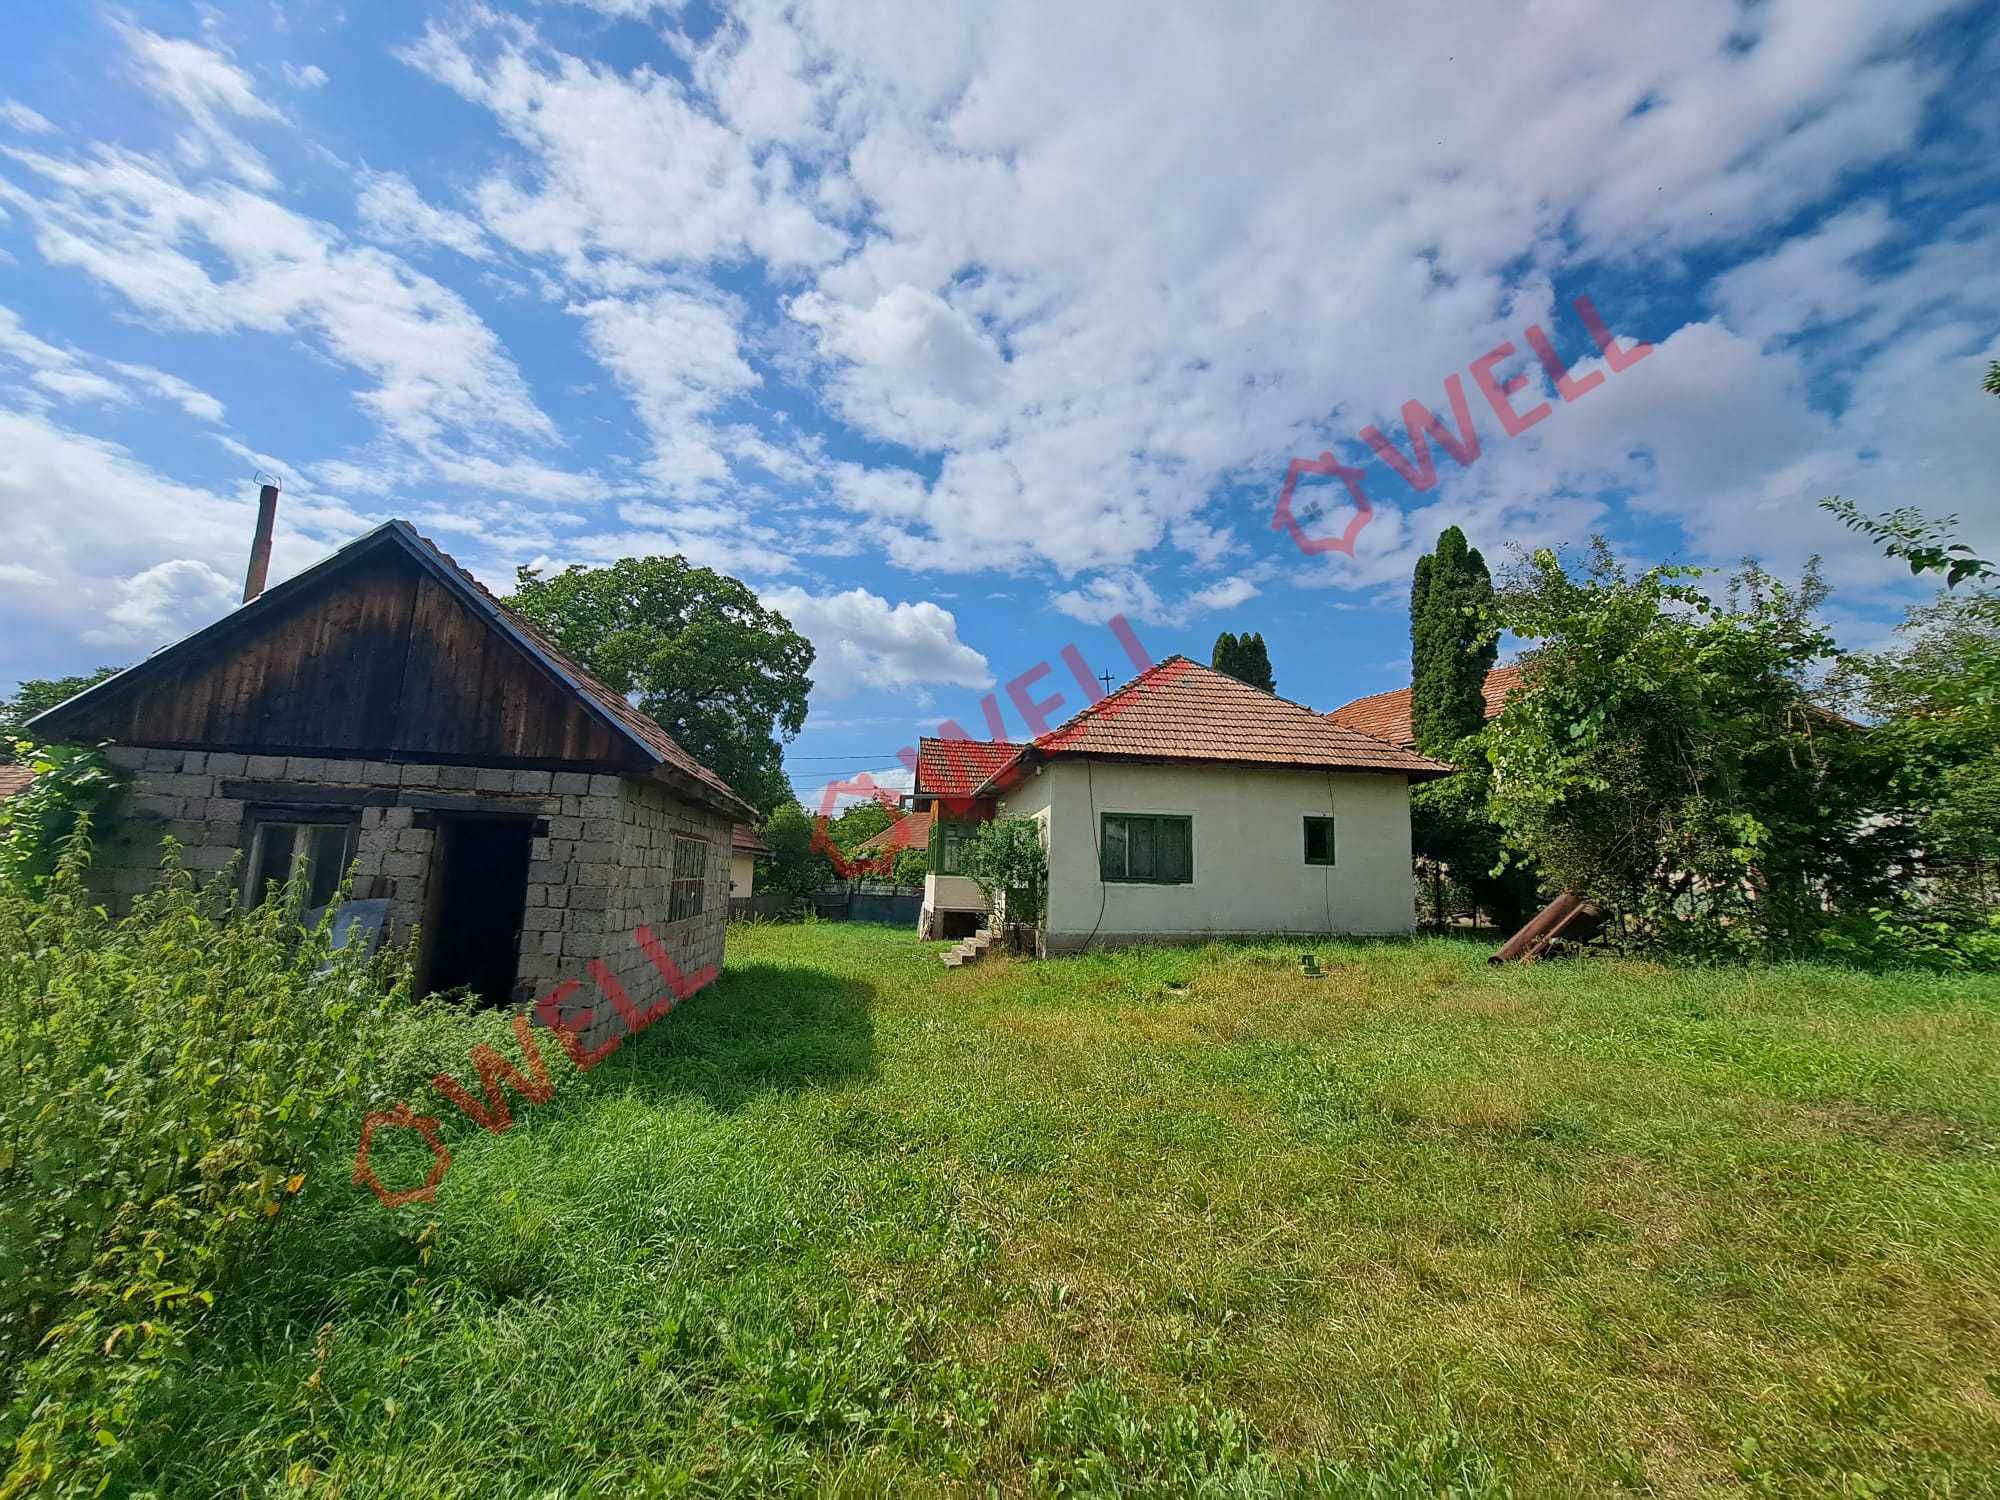 De vânzare o casă familială în Voineșt, orașul Covasna